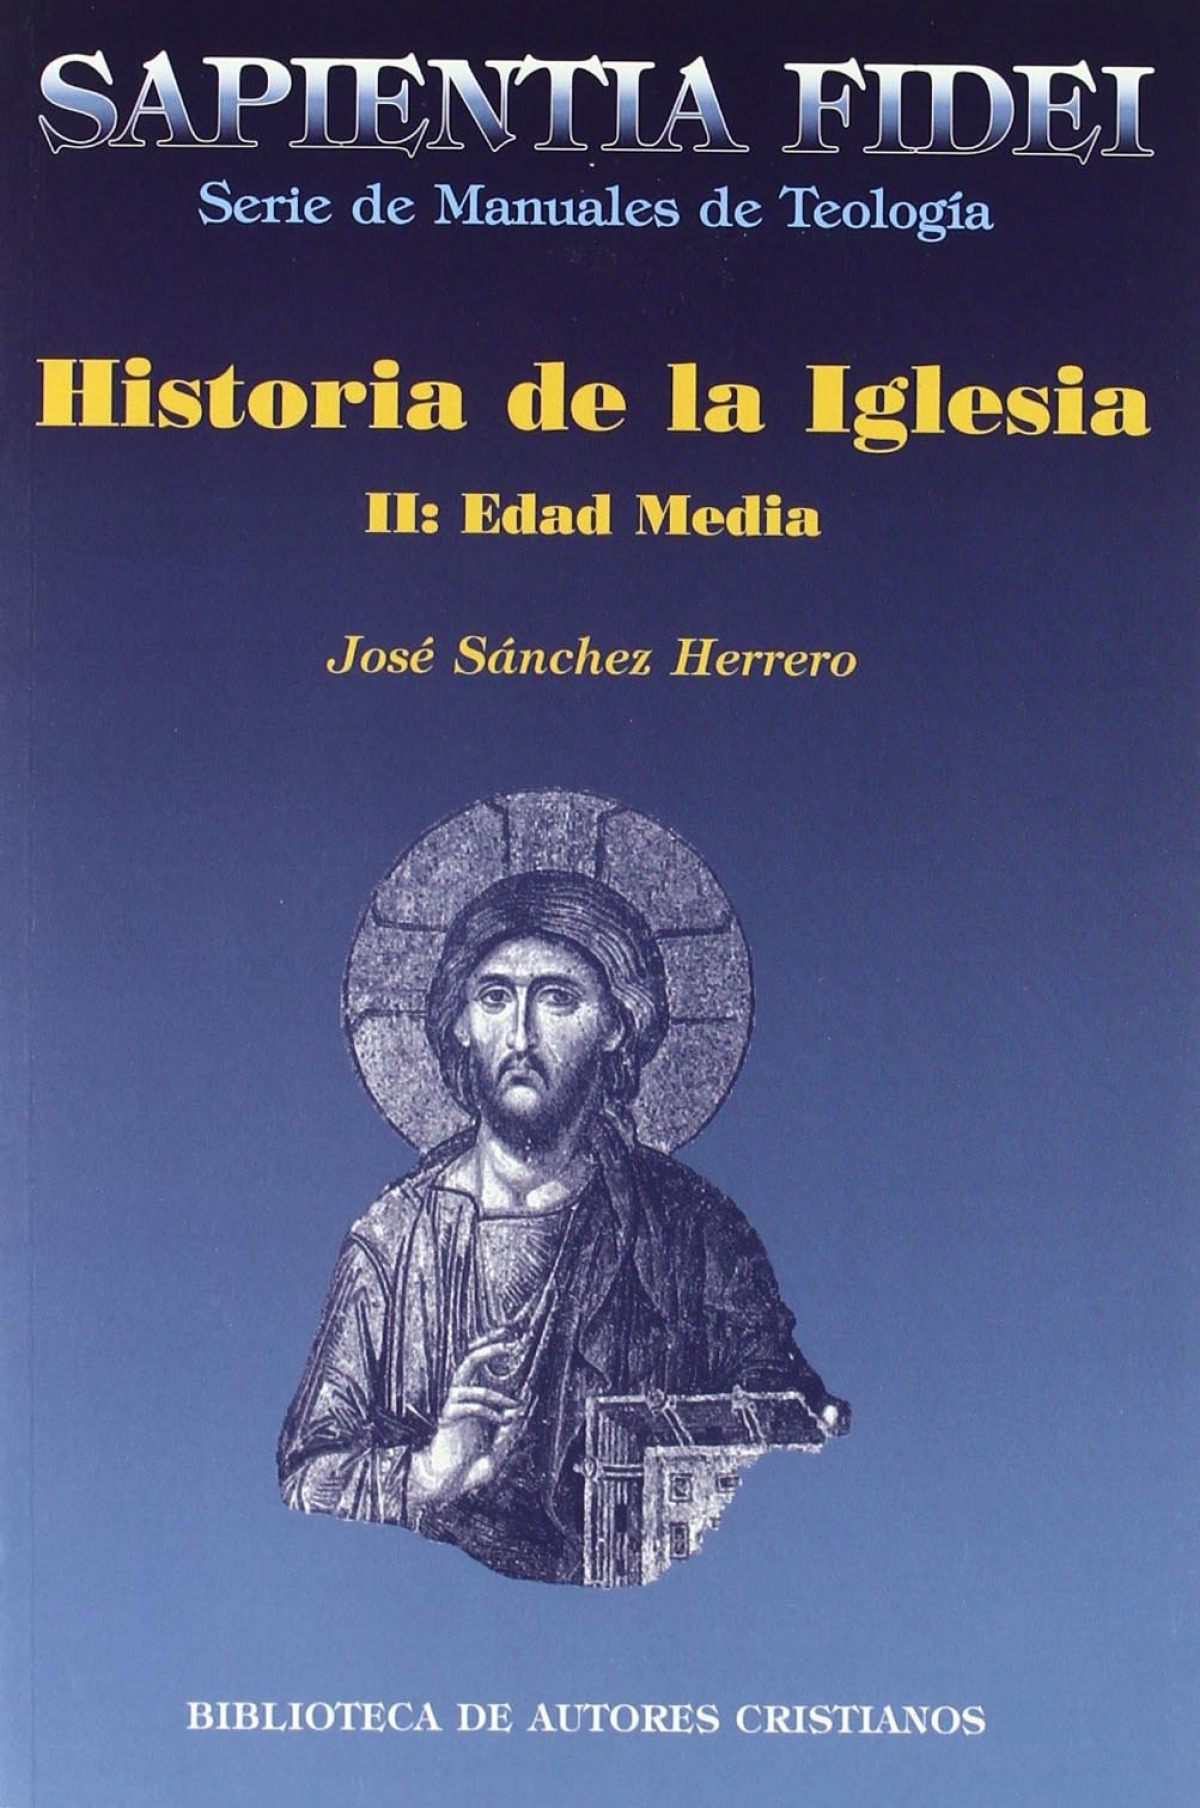 Historia de la Iglesia.II: Edad Media - Sánchez Herrero, José